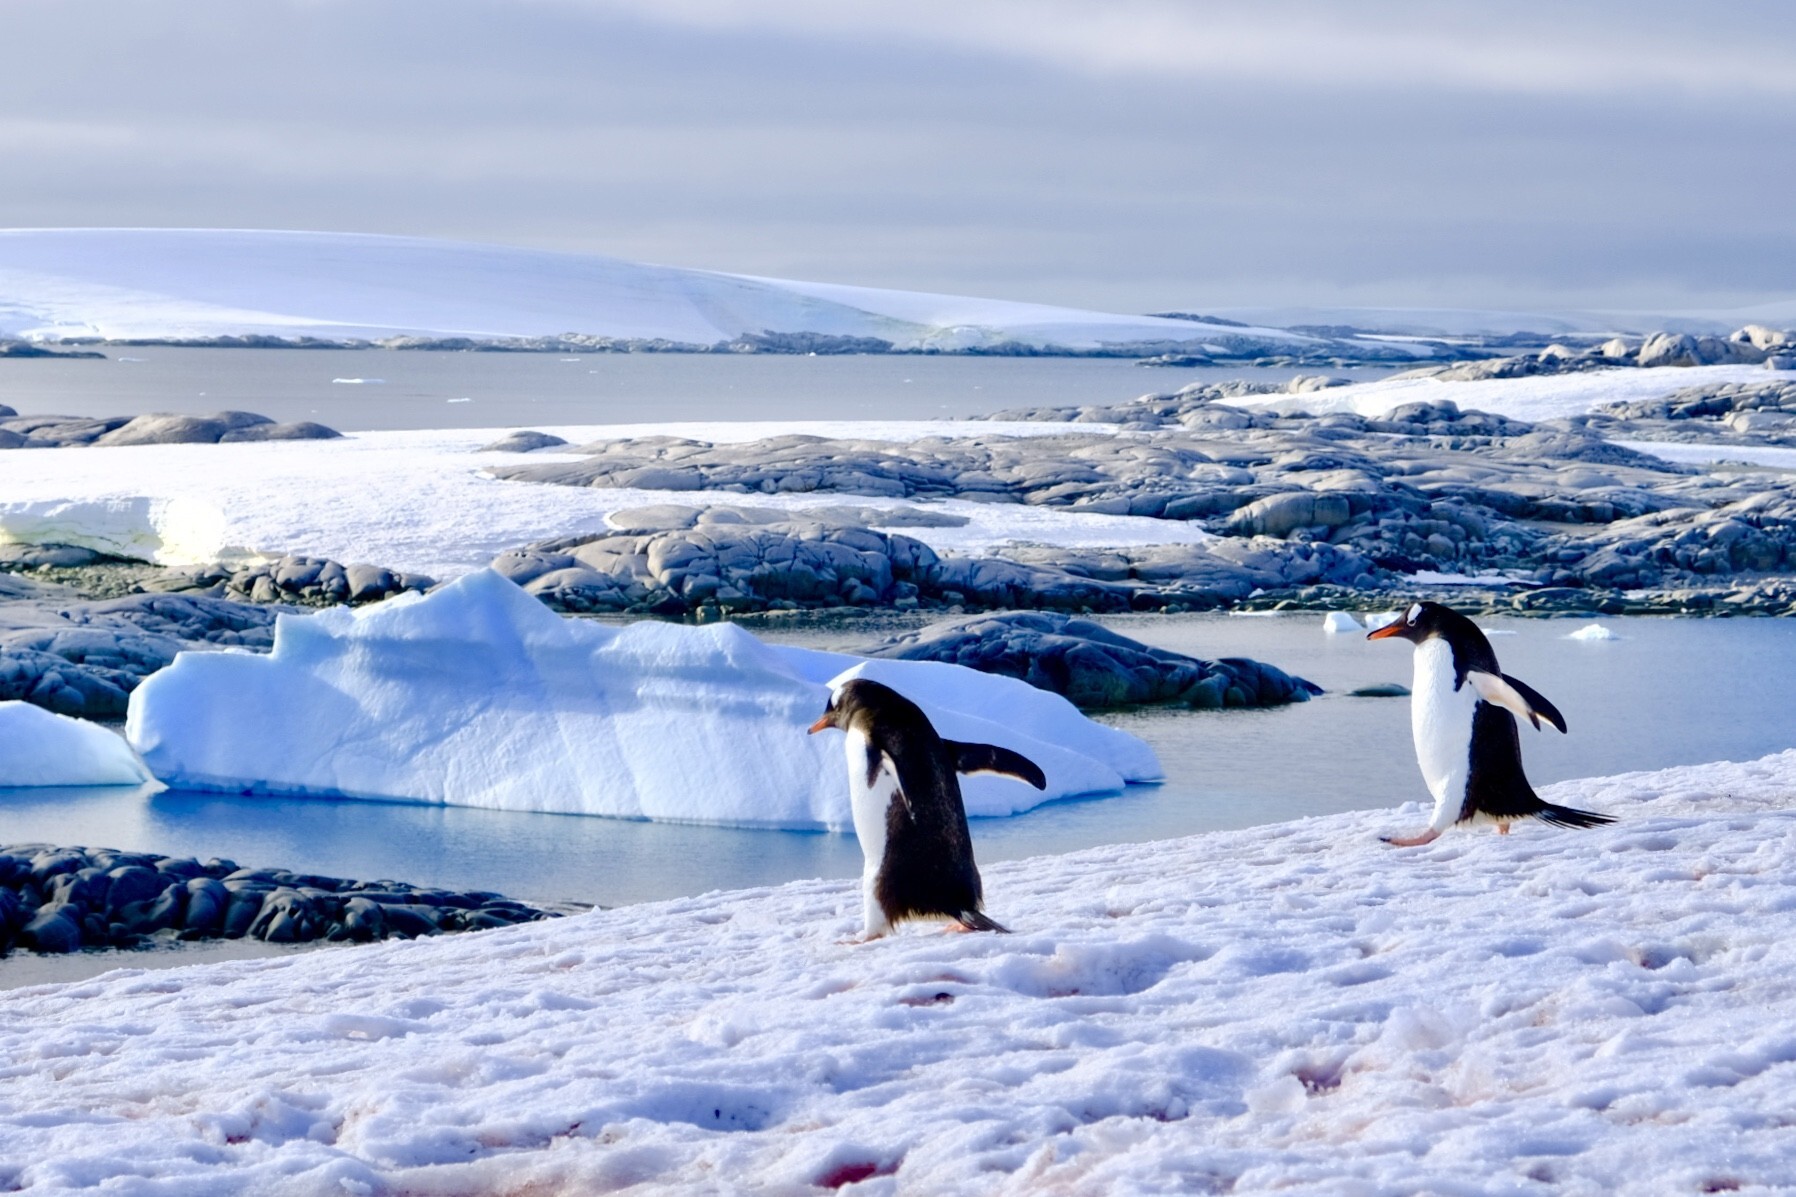 Gentoo penguins at Port Charcot, Antartica. Photo: Carolyn Beasley